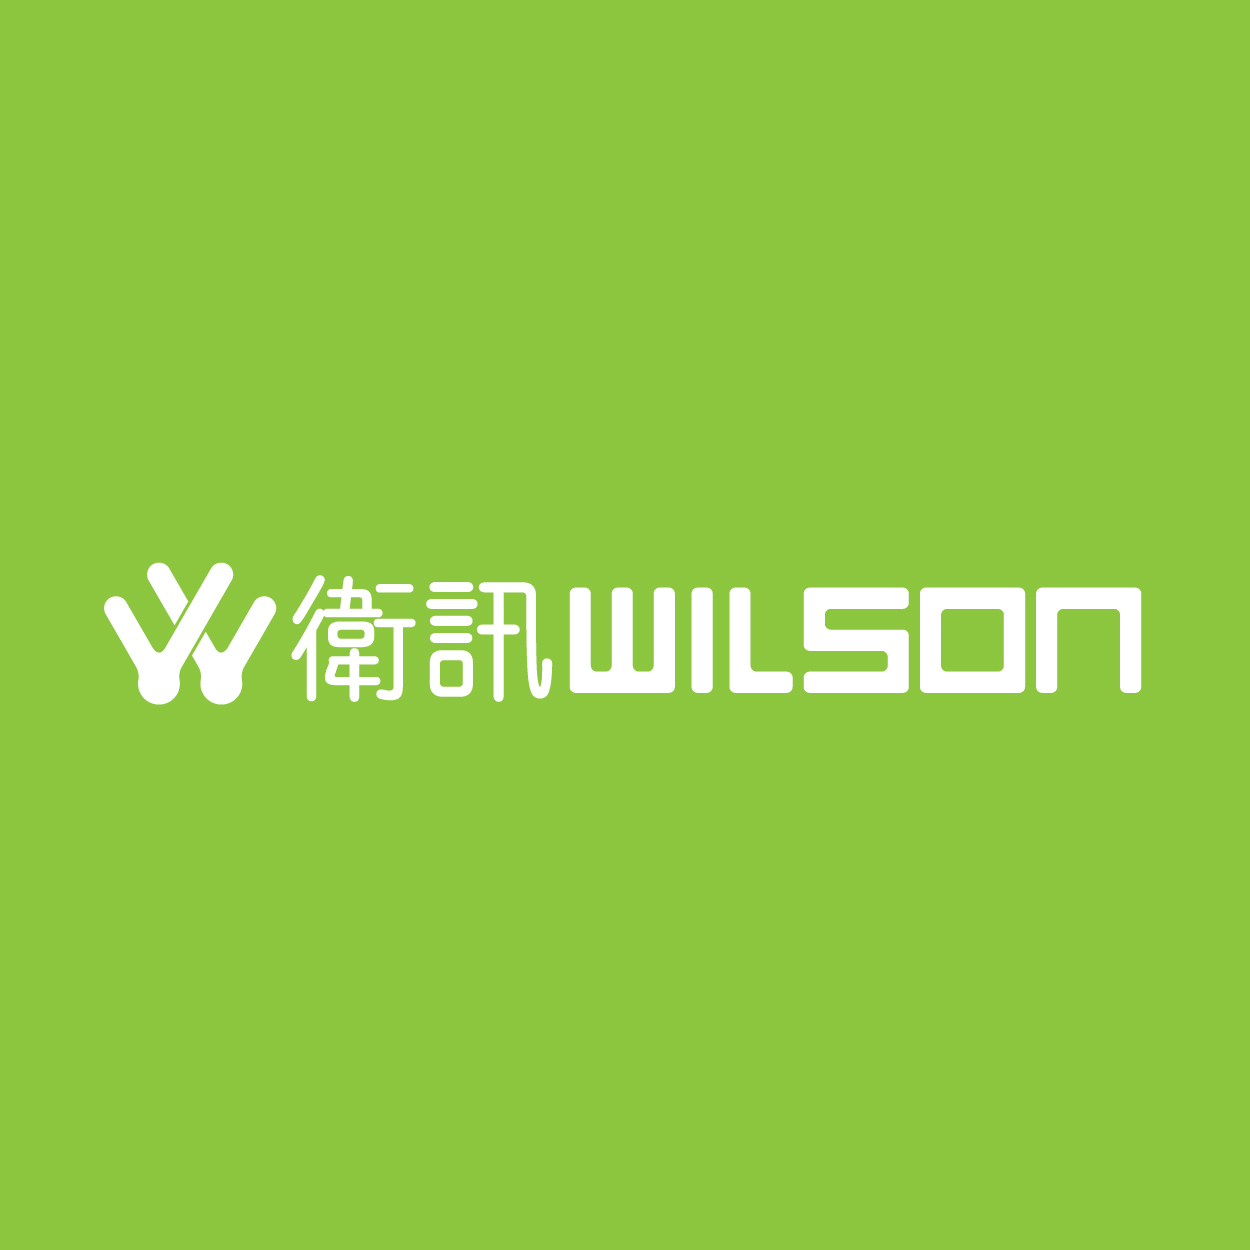 WILSON 